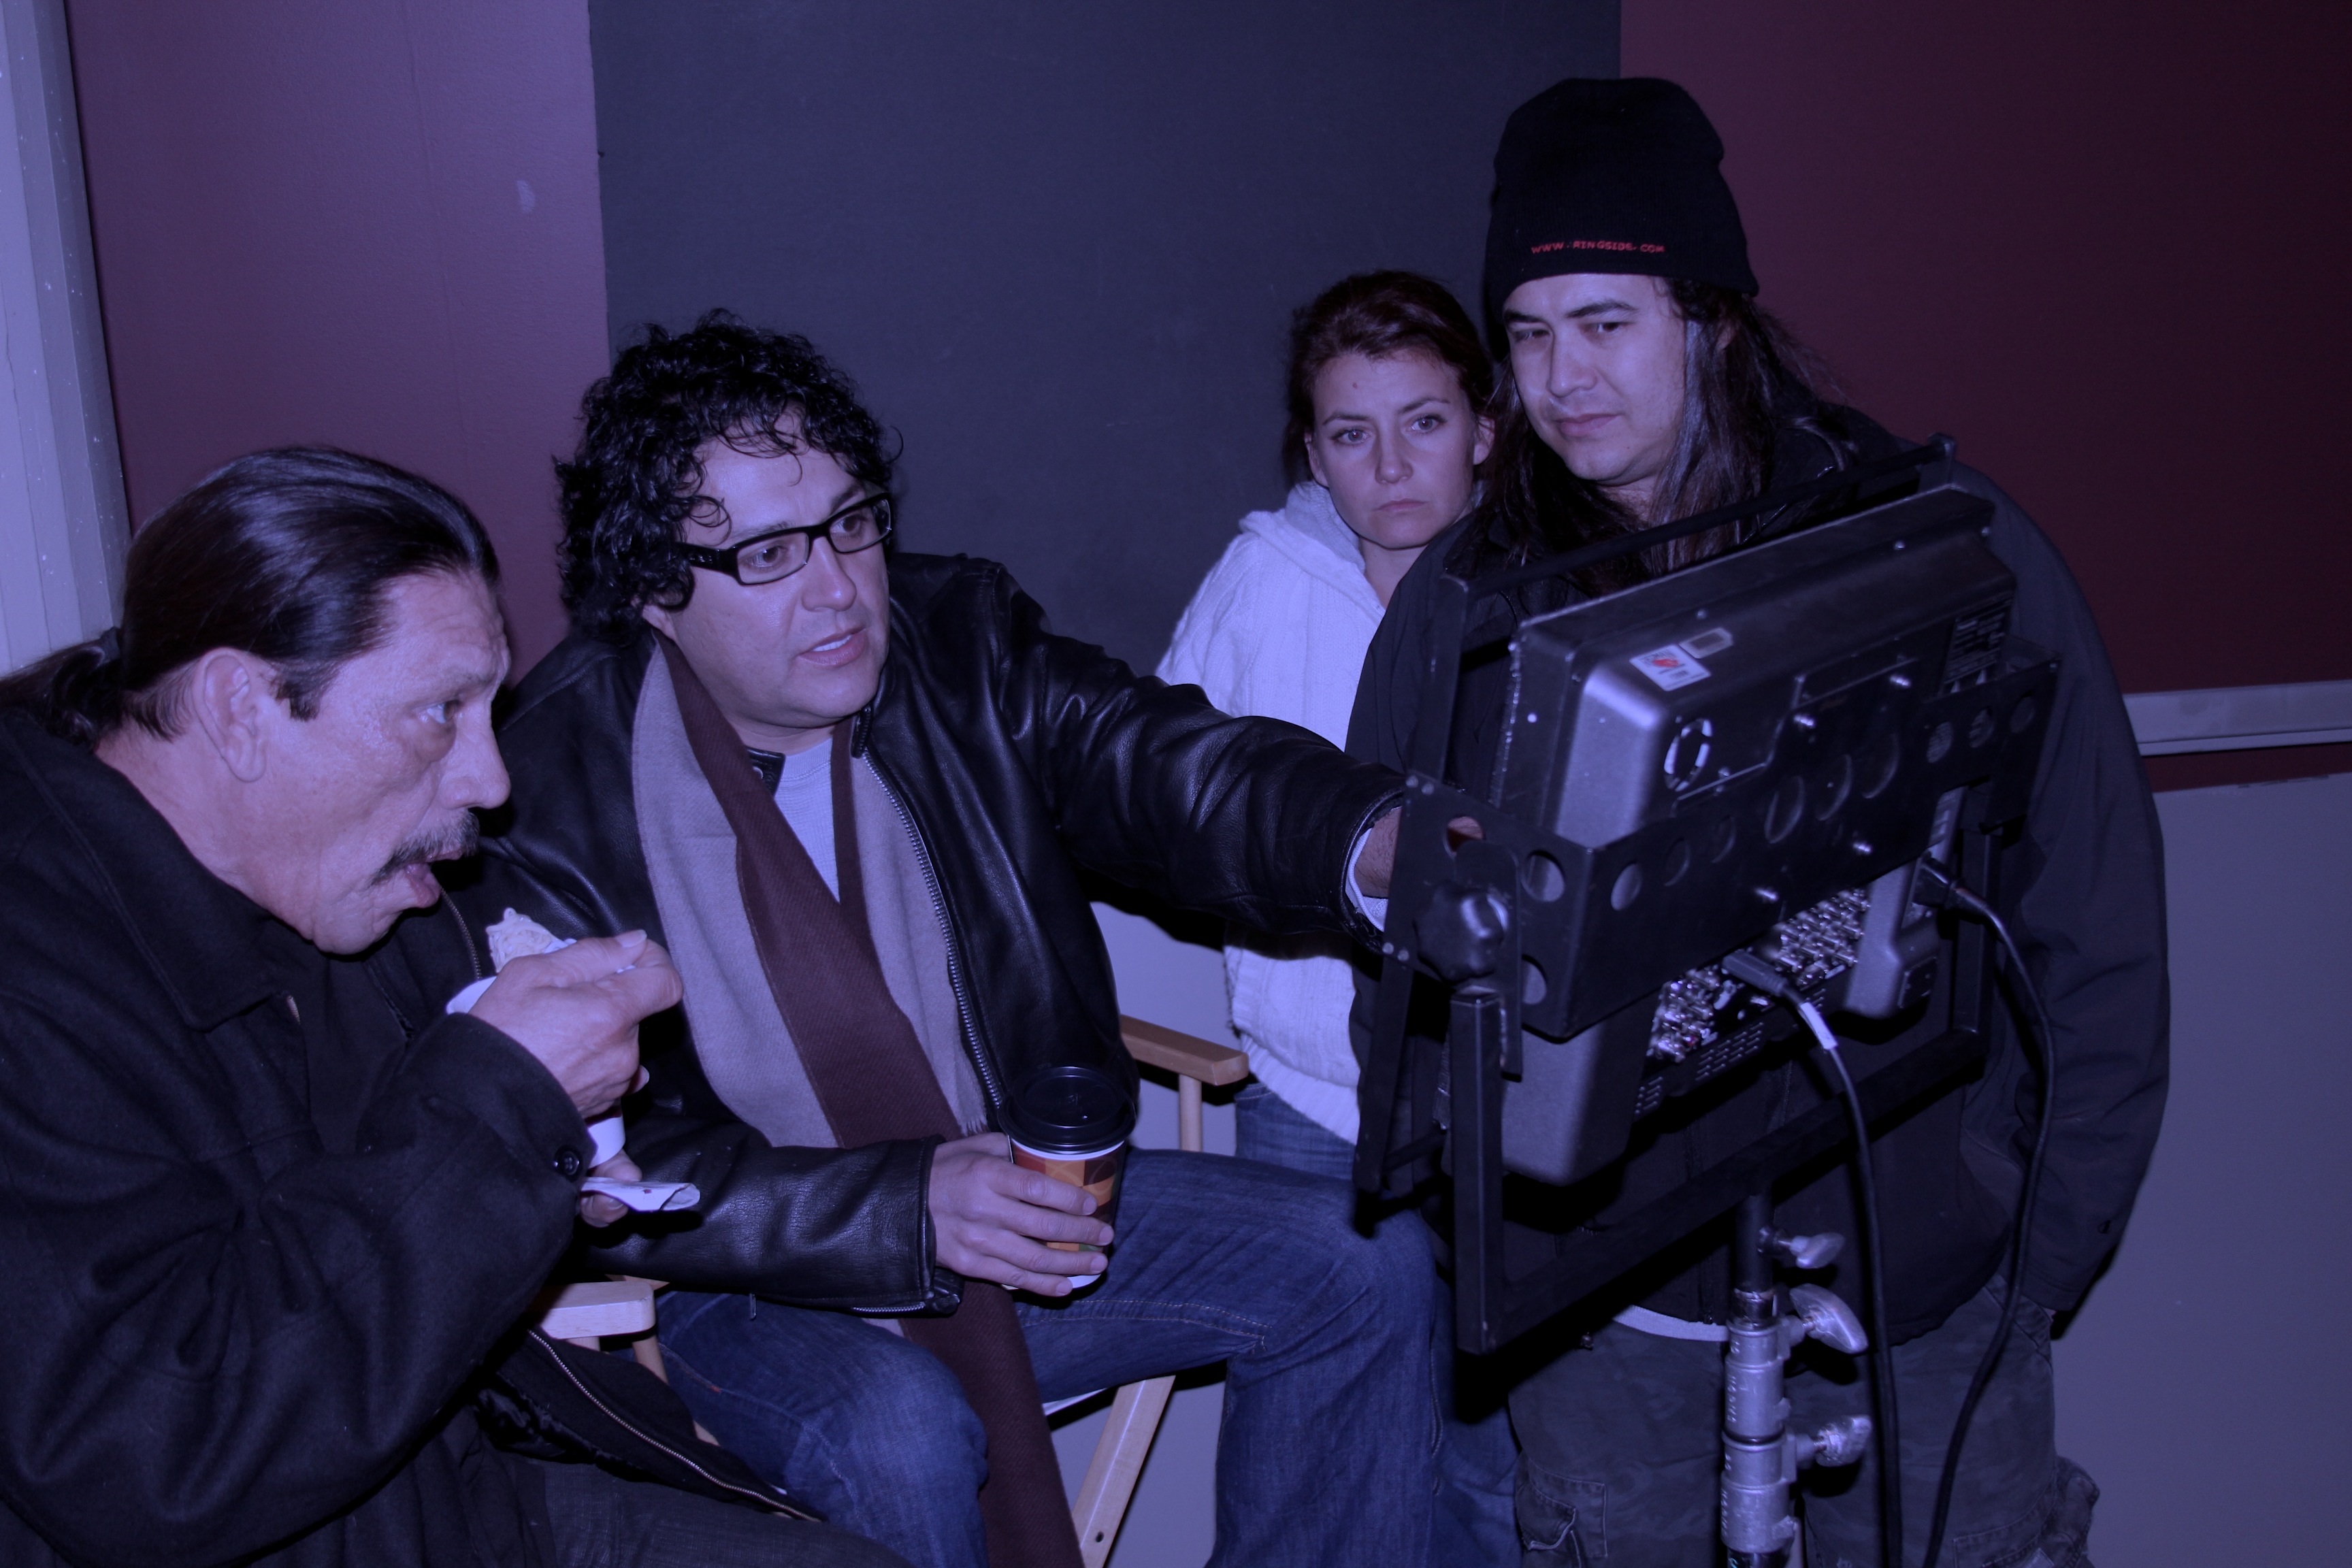 Danny trejo,Gil Medina on the set of Danny Trejo's Vengeance